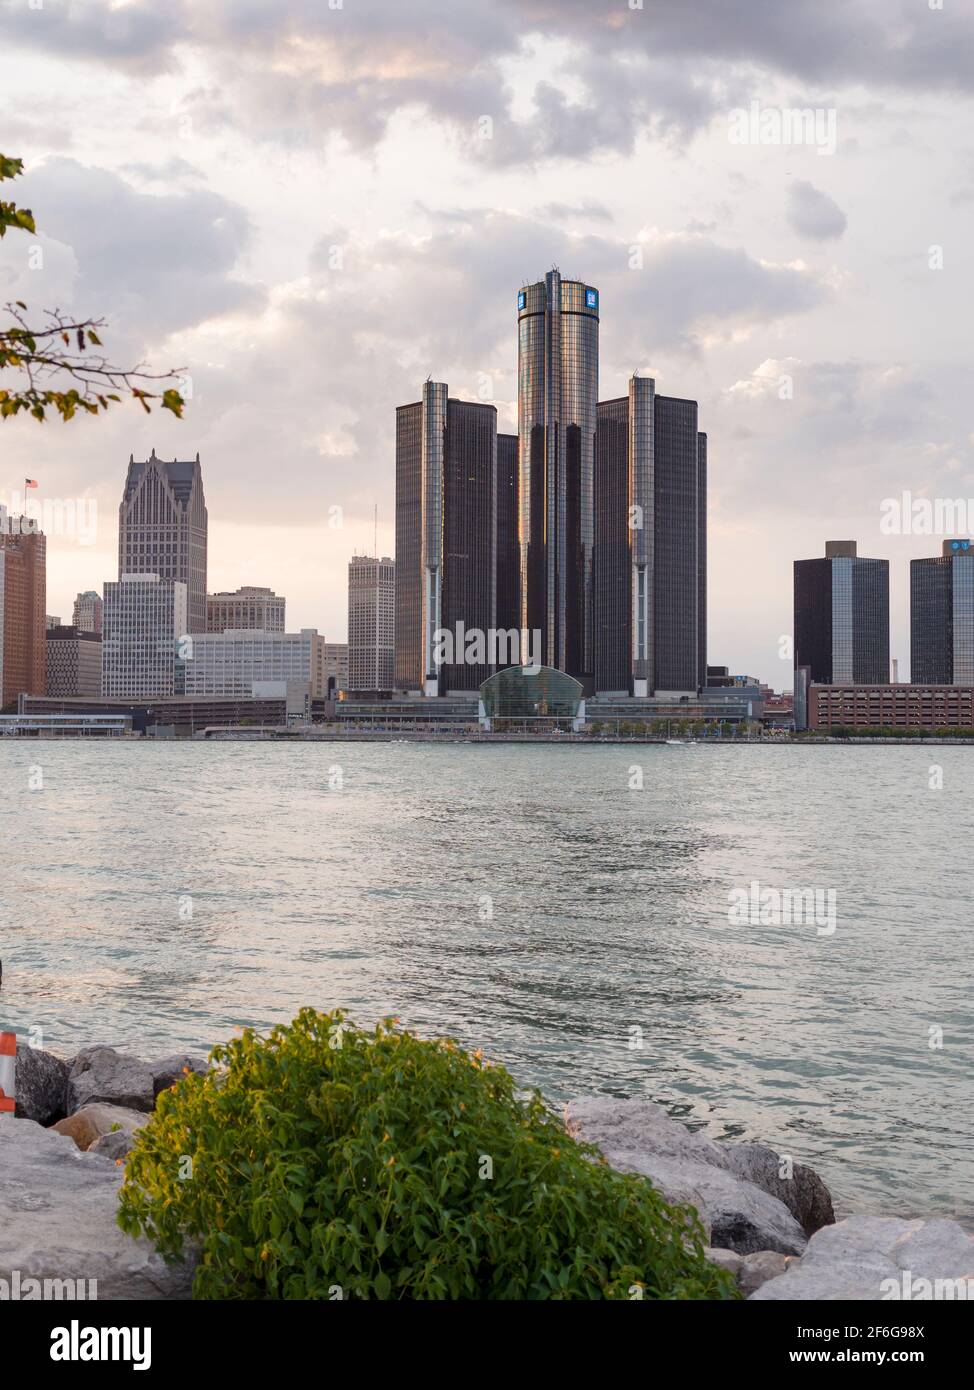 Renaissance Centre Detroit éclairé par un soleil couchant : les tours du Renaissance Centre dans le centre-ville de Detroit dominent la ligne d'horizon. La tour cylindrique GM est la plus haute. Banque D'Images